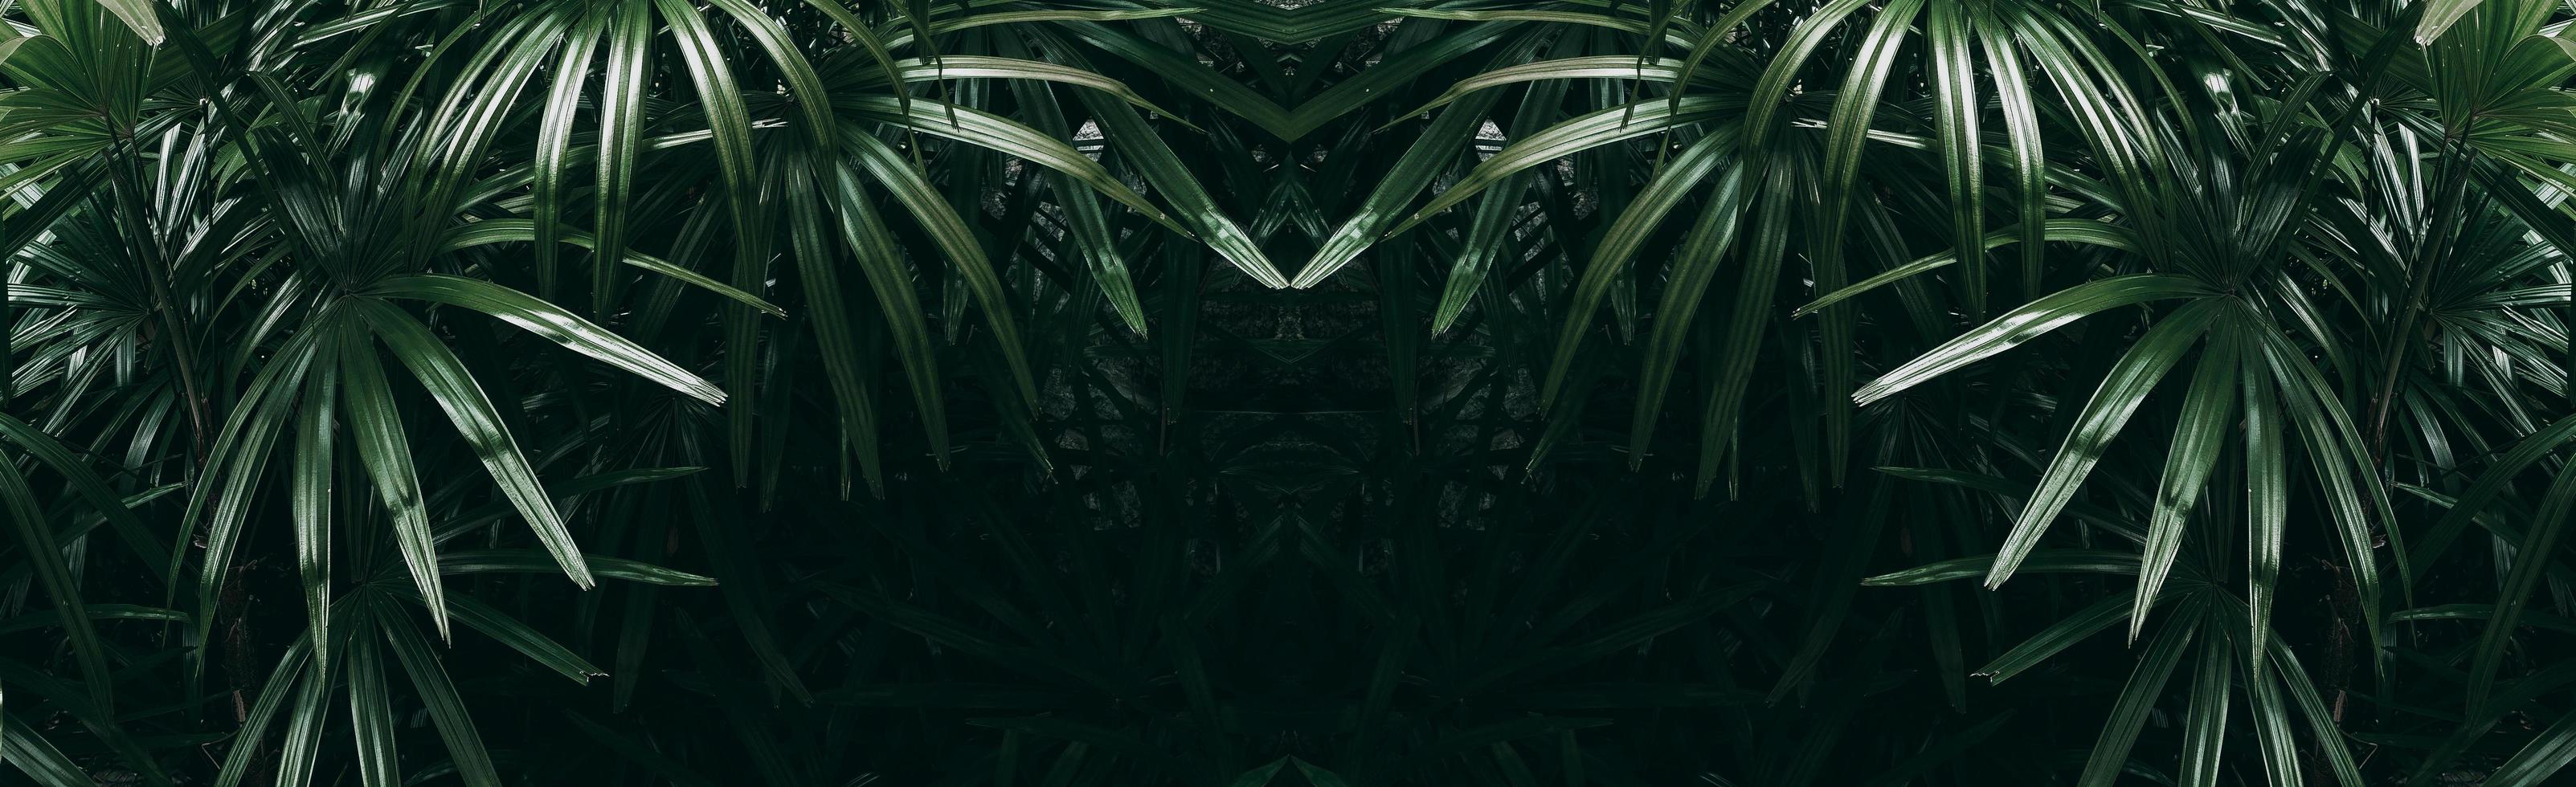 tropisches grünes Blatt im dunklen Ton foto